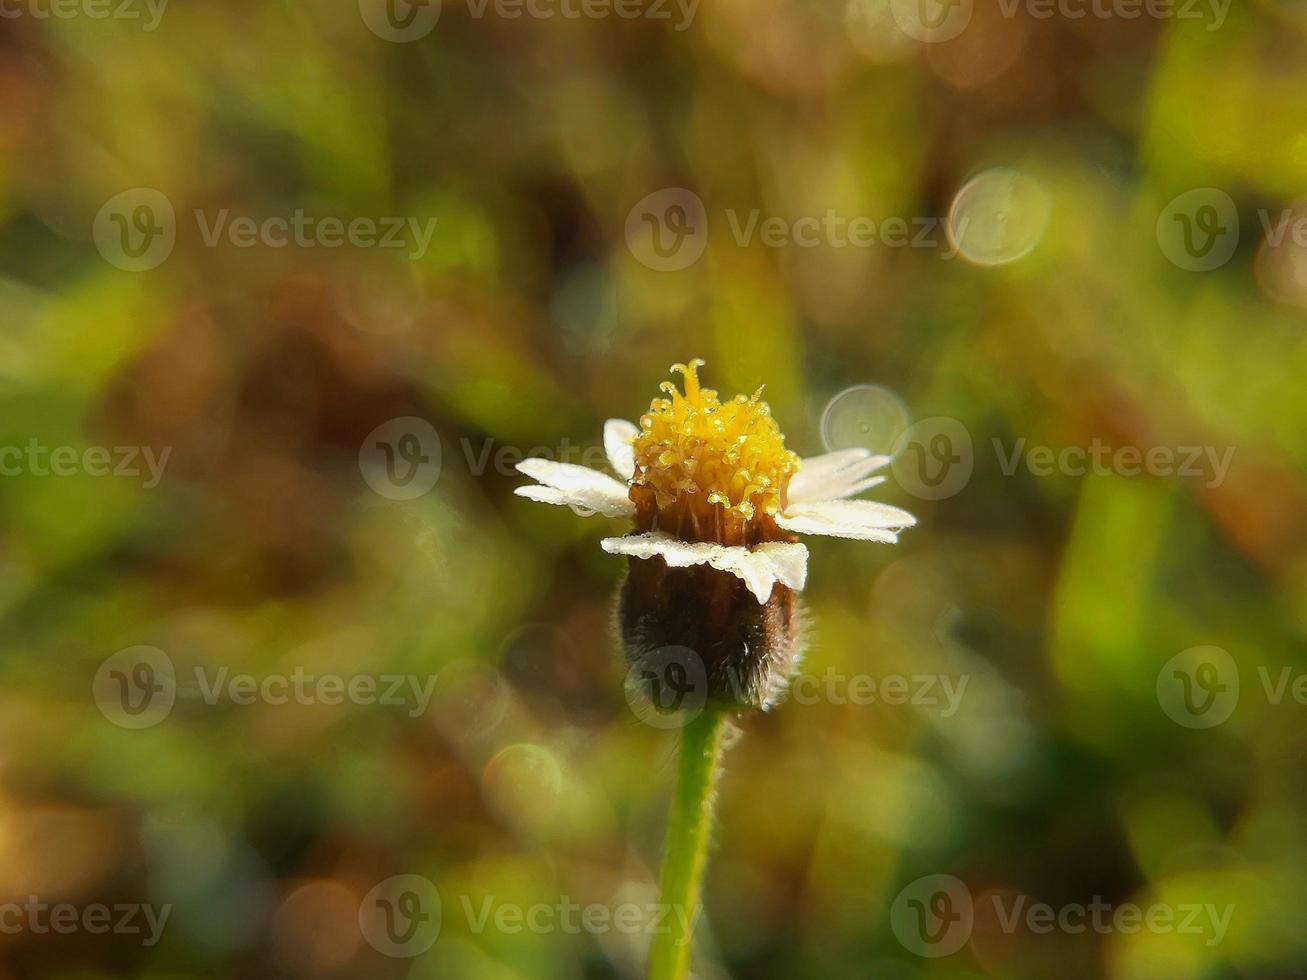 vit gul blomma med slät bakgrund. makrofotografering, smalt fokus. foto av hög kvalitet